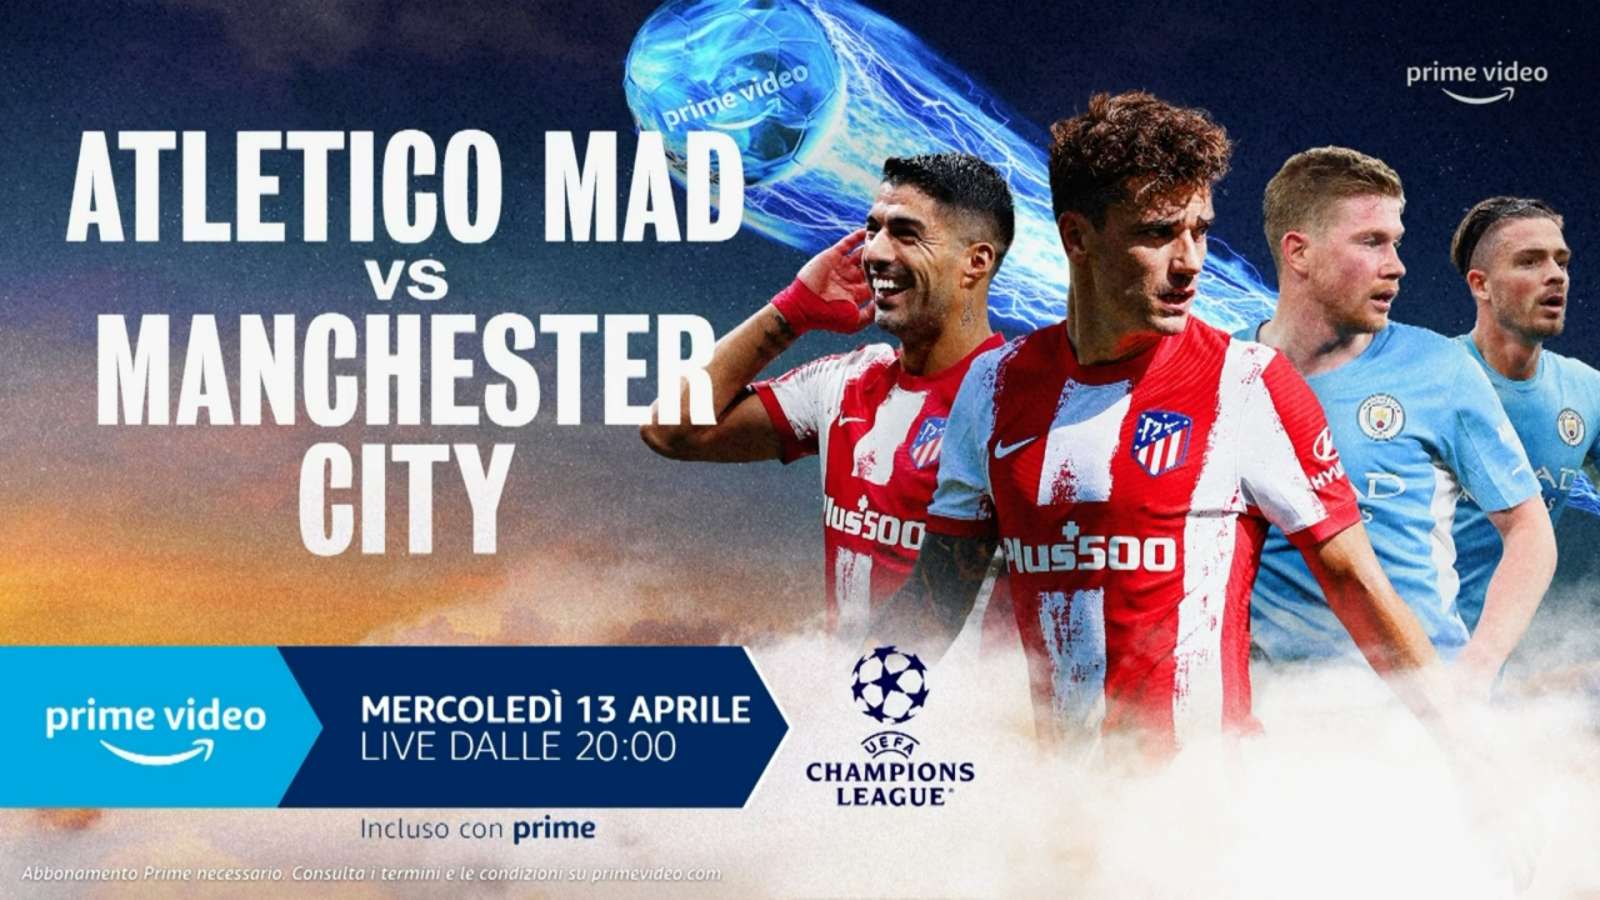 Champions League, Atletico Madrid - Manchester City, Diretta esclusiva Amazon Prime Video